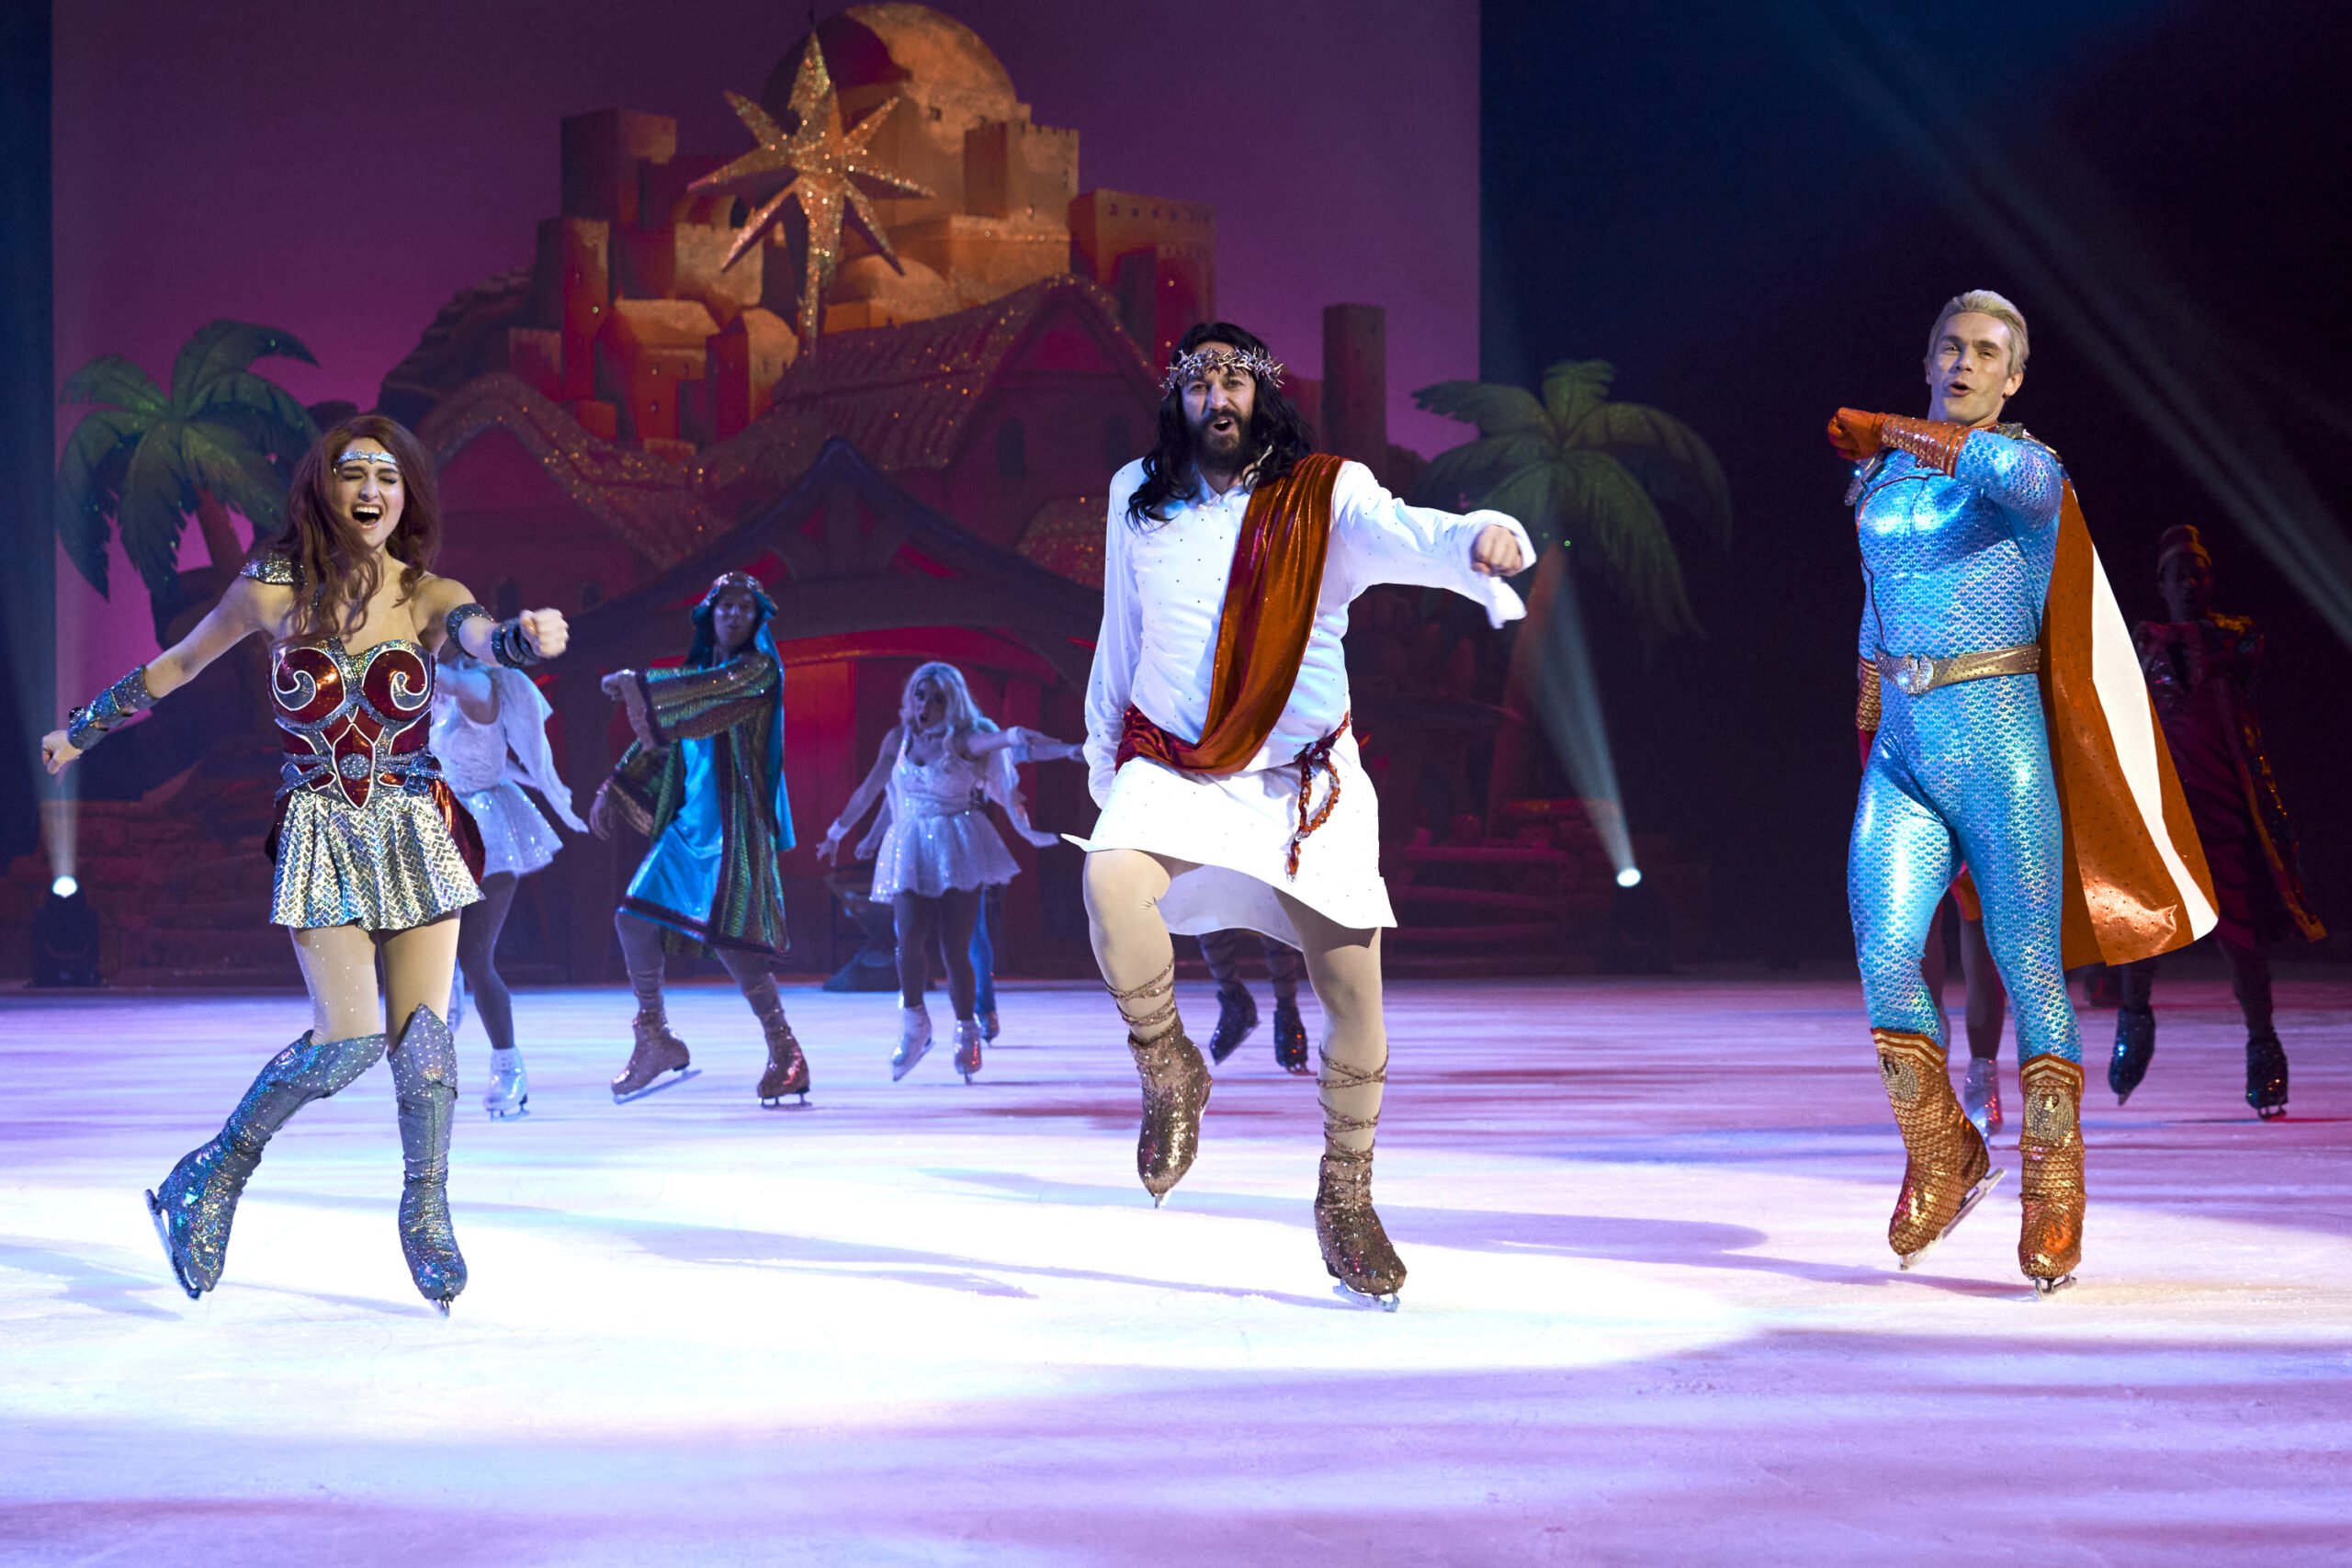 Kadr z The Boys 4. Artyści w kolorowych kostiumach (w tym jedna osoba przebrana za superbohaterkę, druga za Jezusa, a trzecia za superbohatera w niebieskim stroju) występują na lodzie w scenerii z palmami i budynkami w tle.